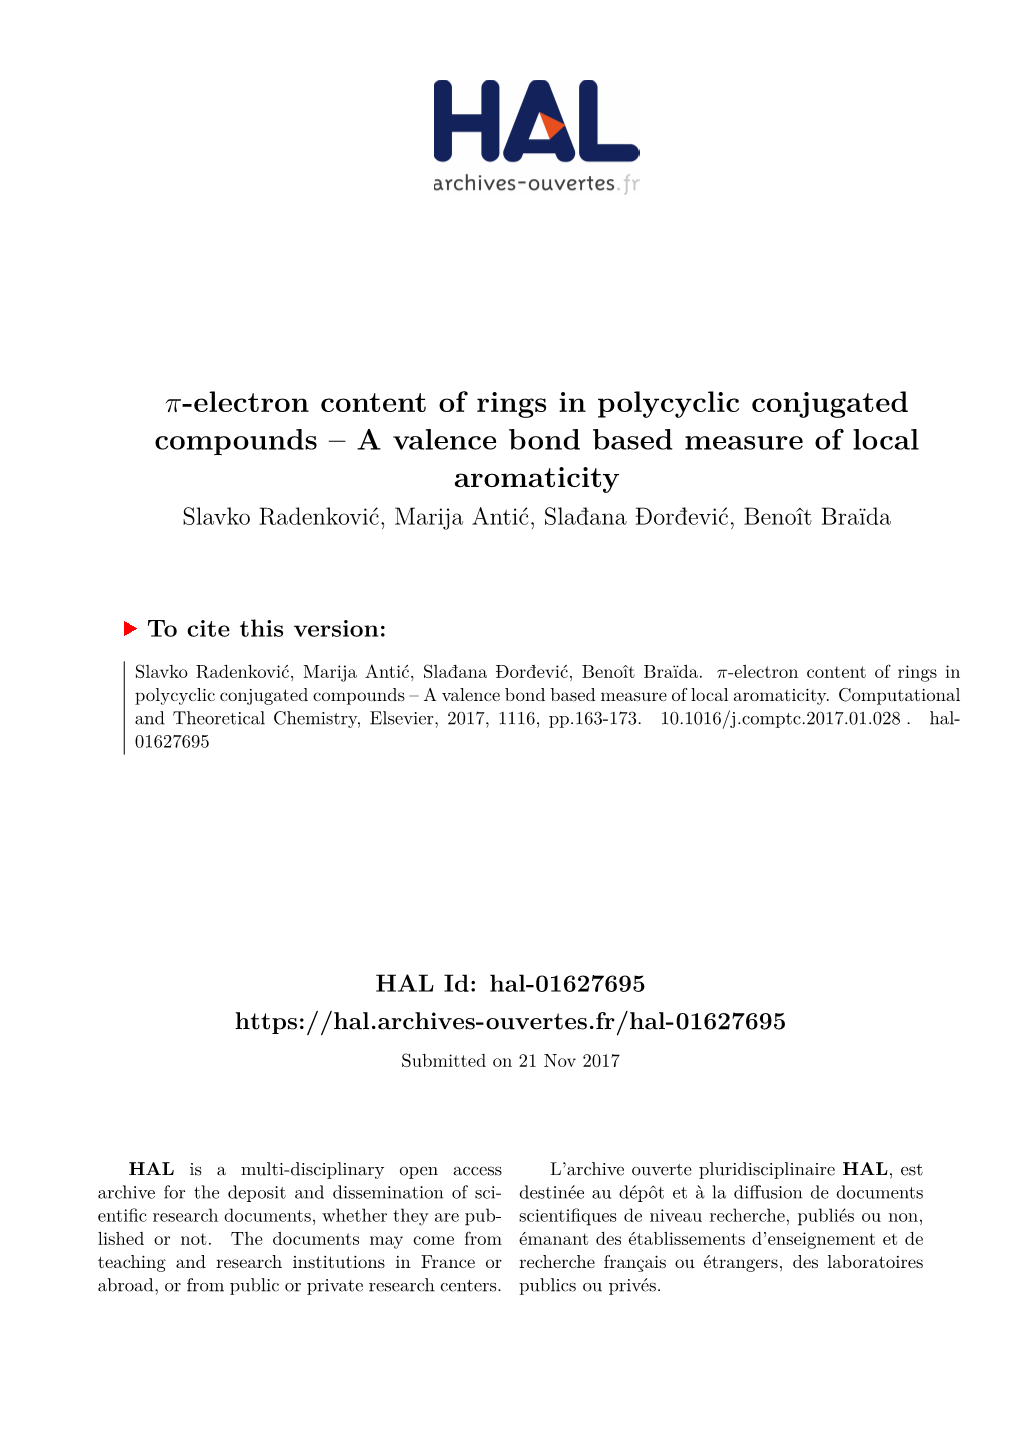 Π-Electron Content of Rings in Polycyclic Conjugated Compounds